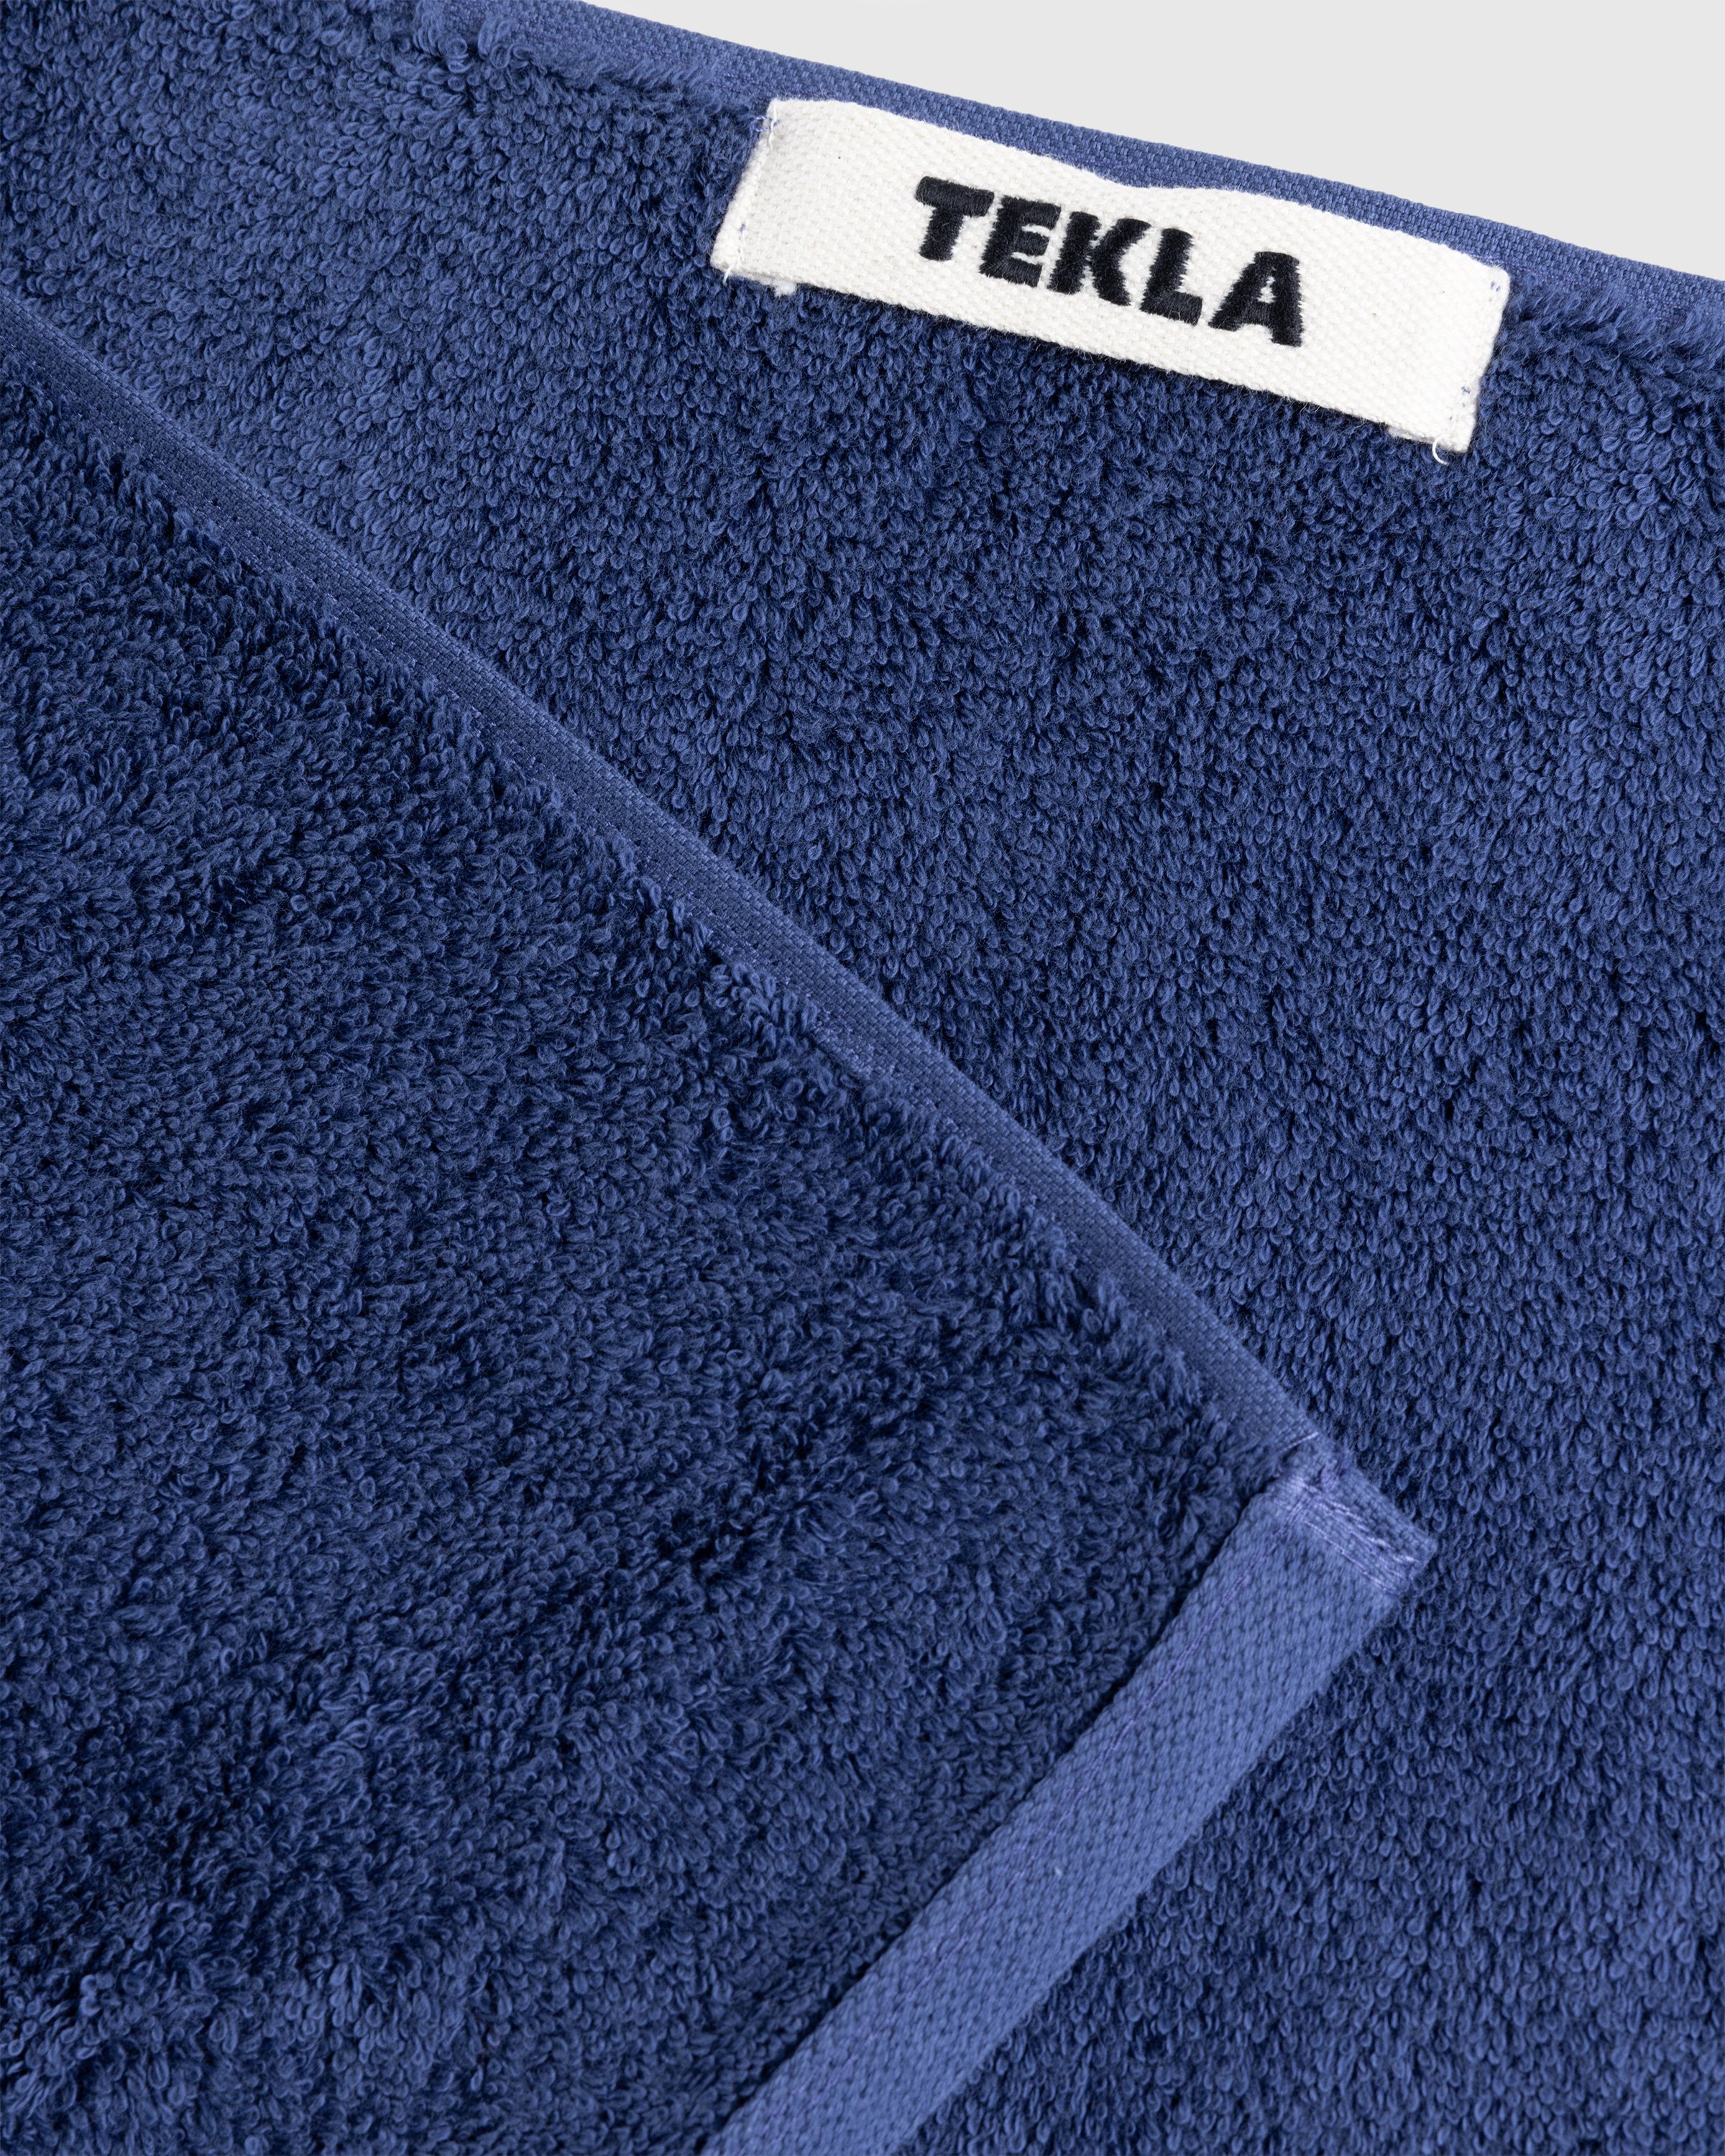 Tekla - Guest Towel 30x50 Navy - Lifestyle - Blue - Image 3